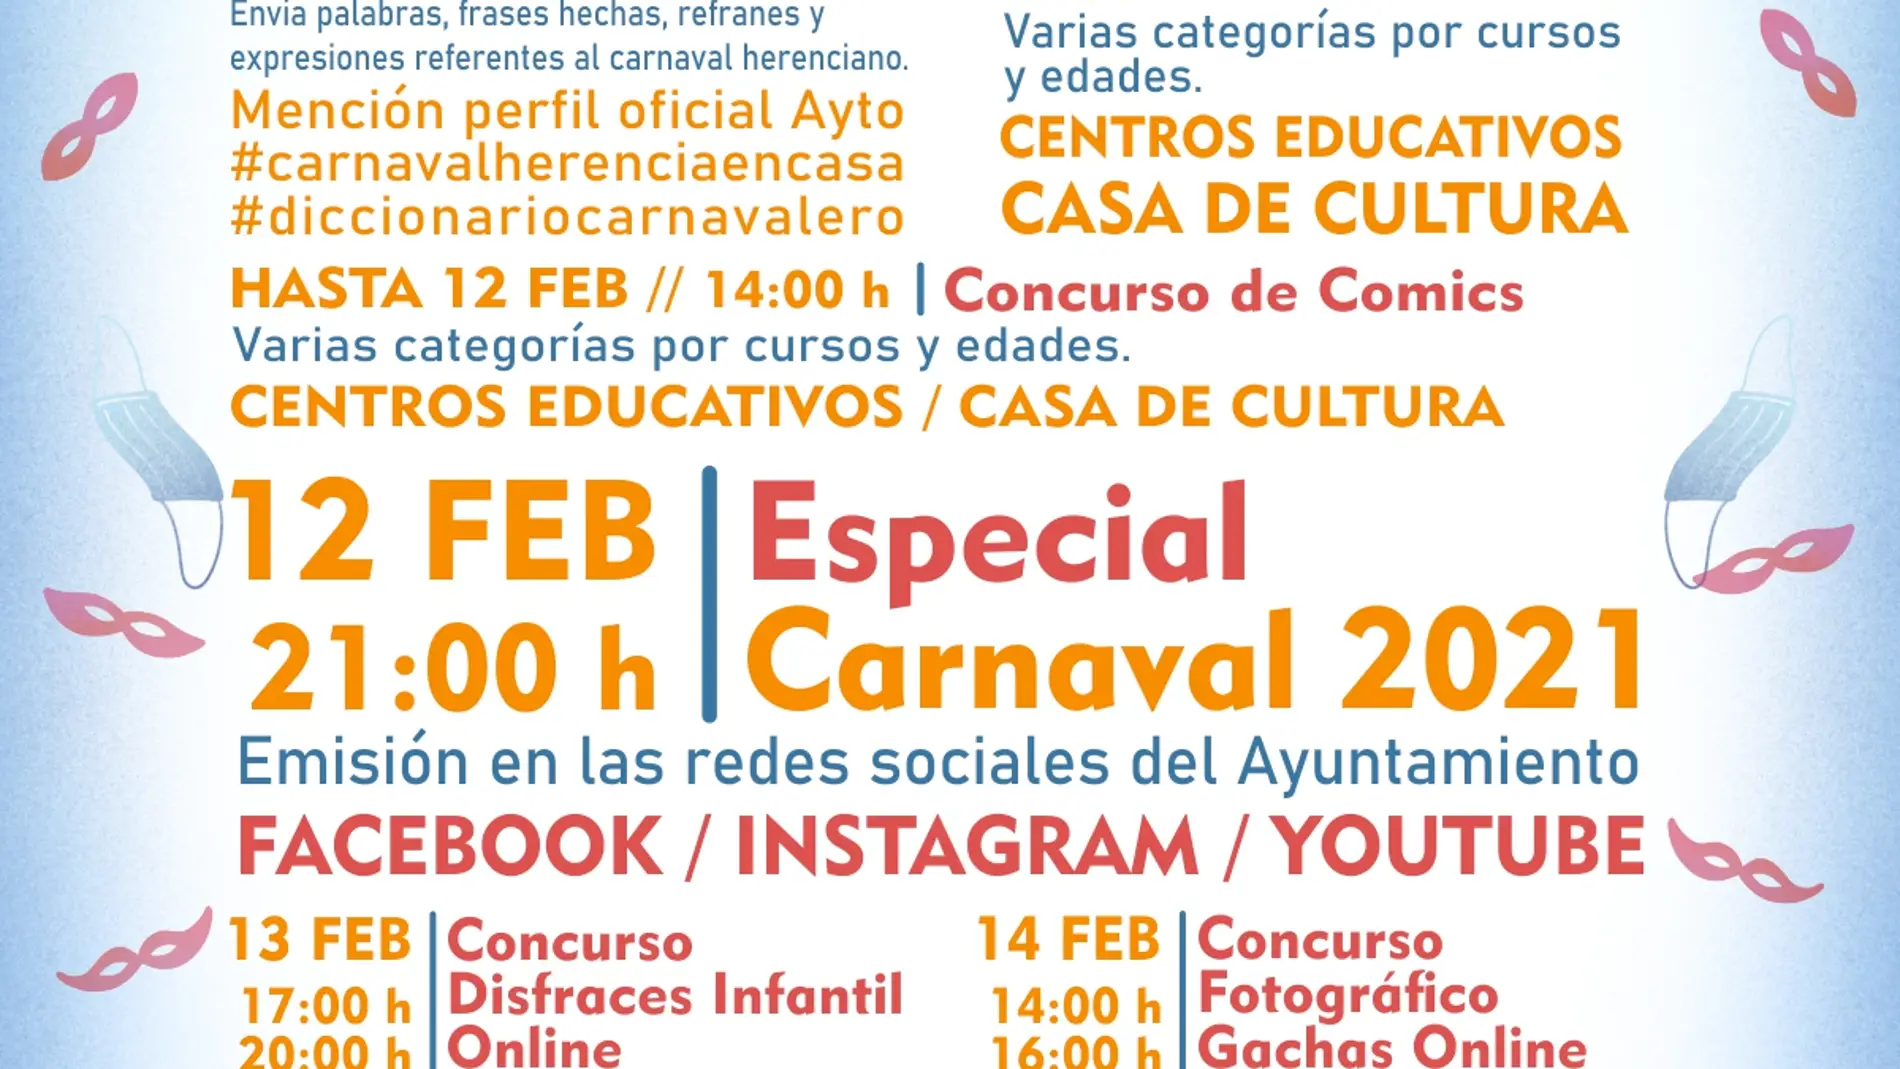 La alternativa para el carnaval herenciano marcado por las restricciones sanitarias